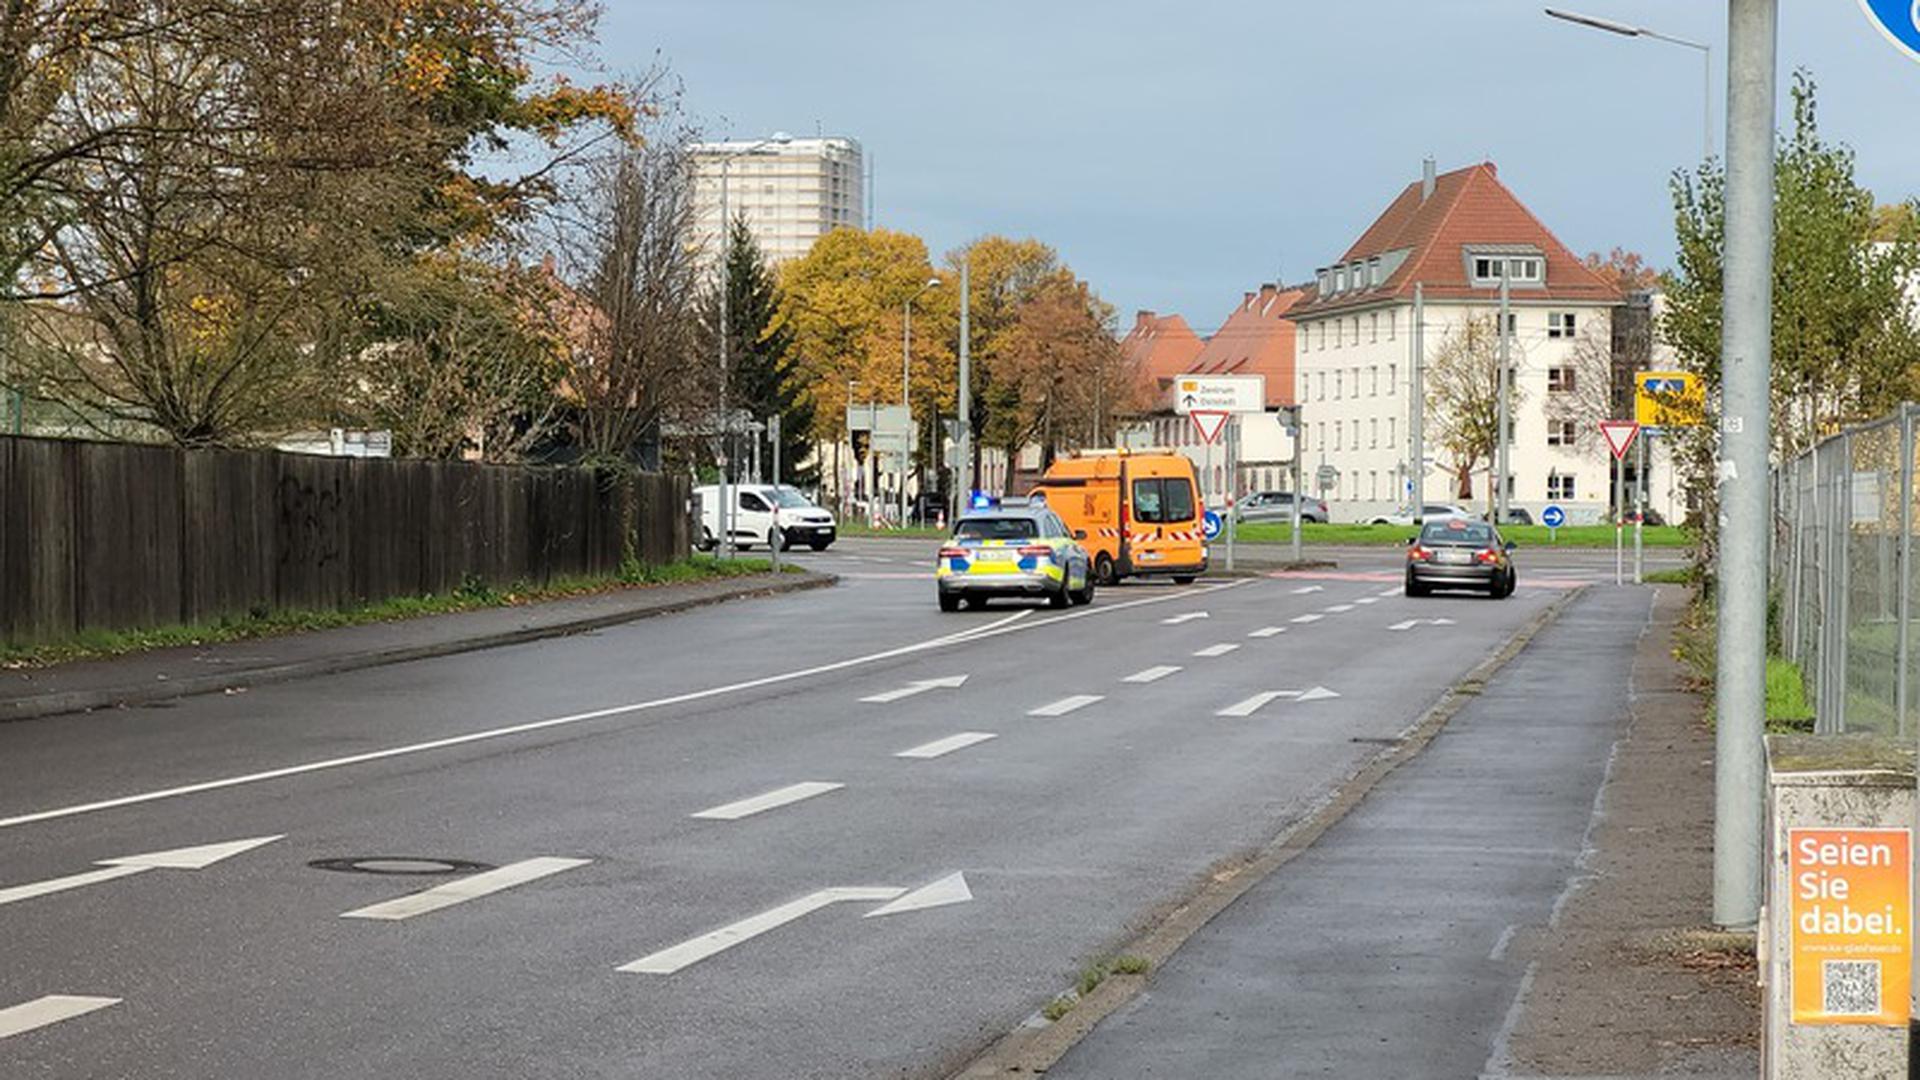 Freie Fahrt: Die Sperrungen, wie hier die der Stuttgarter Straße, wurden nach der Entschärfung der Bombe in Karlsruhe aufgehoben.